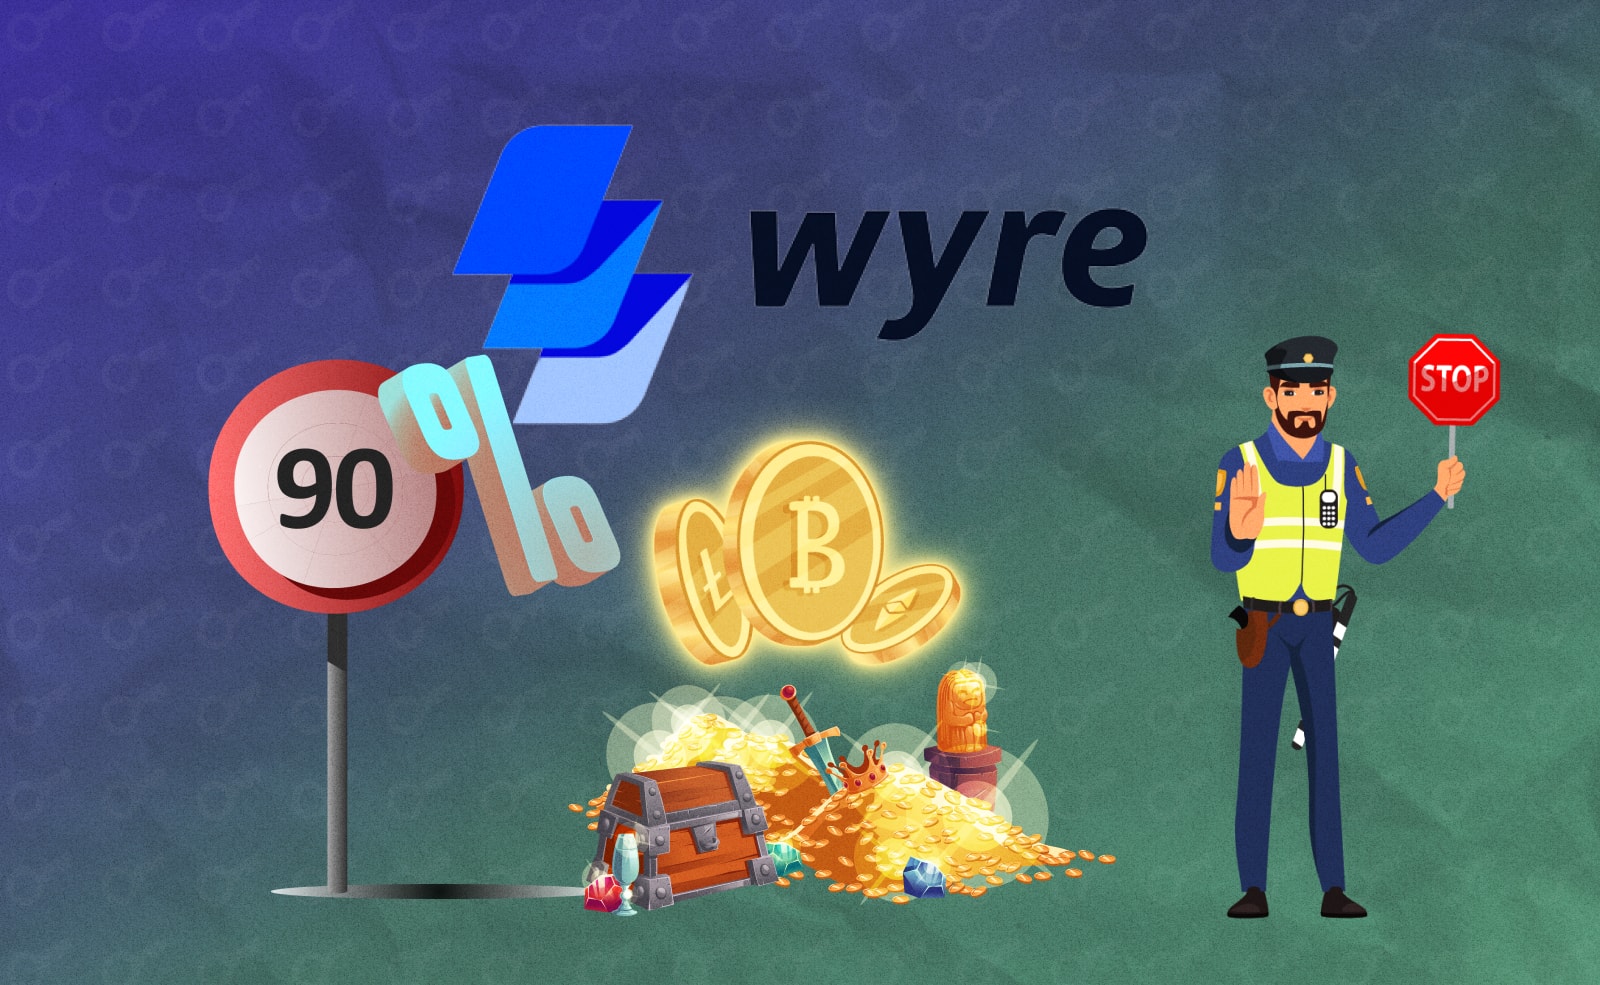 Платежная крипто-платформа Wyre изменила свою политику вывода средств. Теперь пользователи могут снимать не более 90% своих активов.